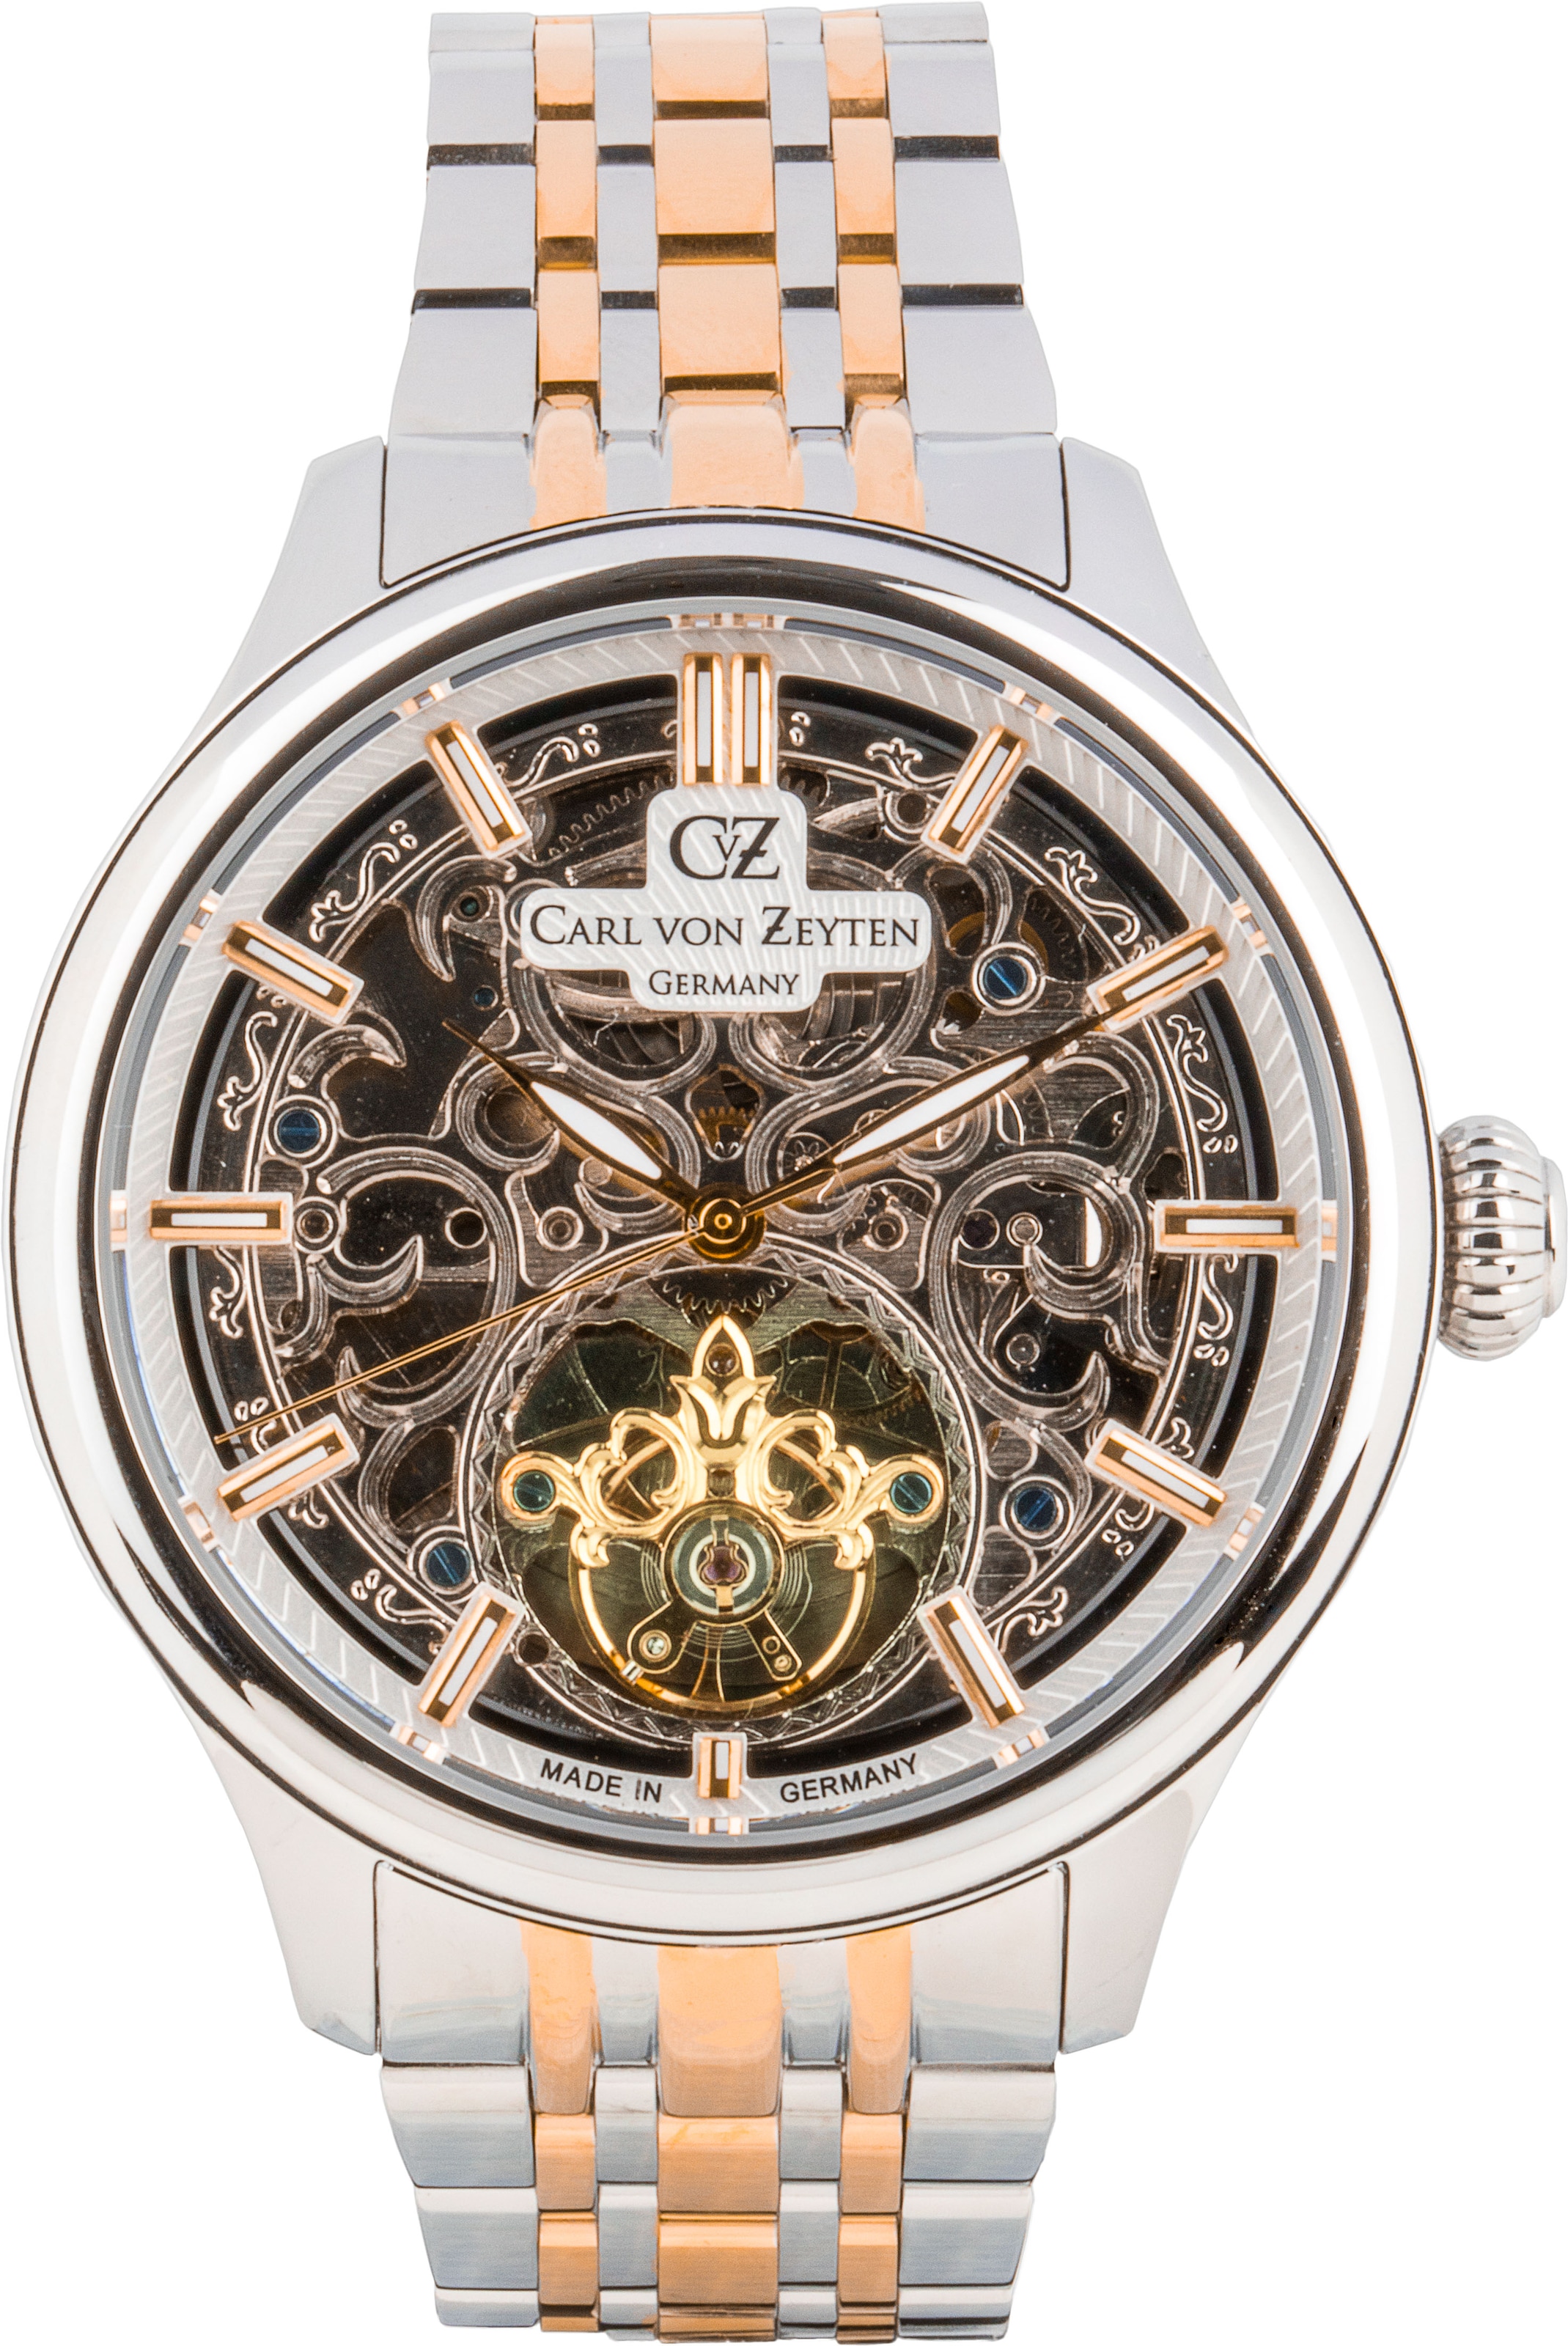 Carl von Zeyten Automatikuhr »St. Georgen«, Armbanduhr, mechanische Uhr, Herrenuhr, Made in Germany